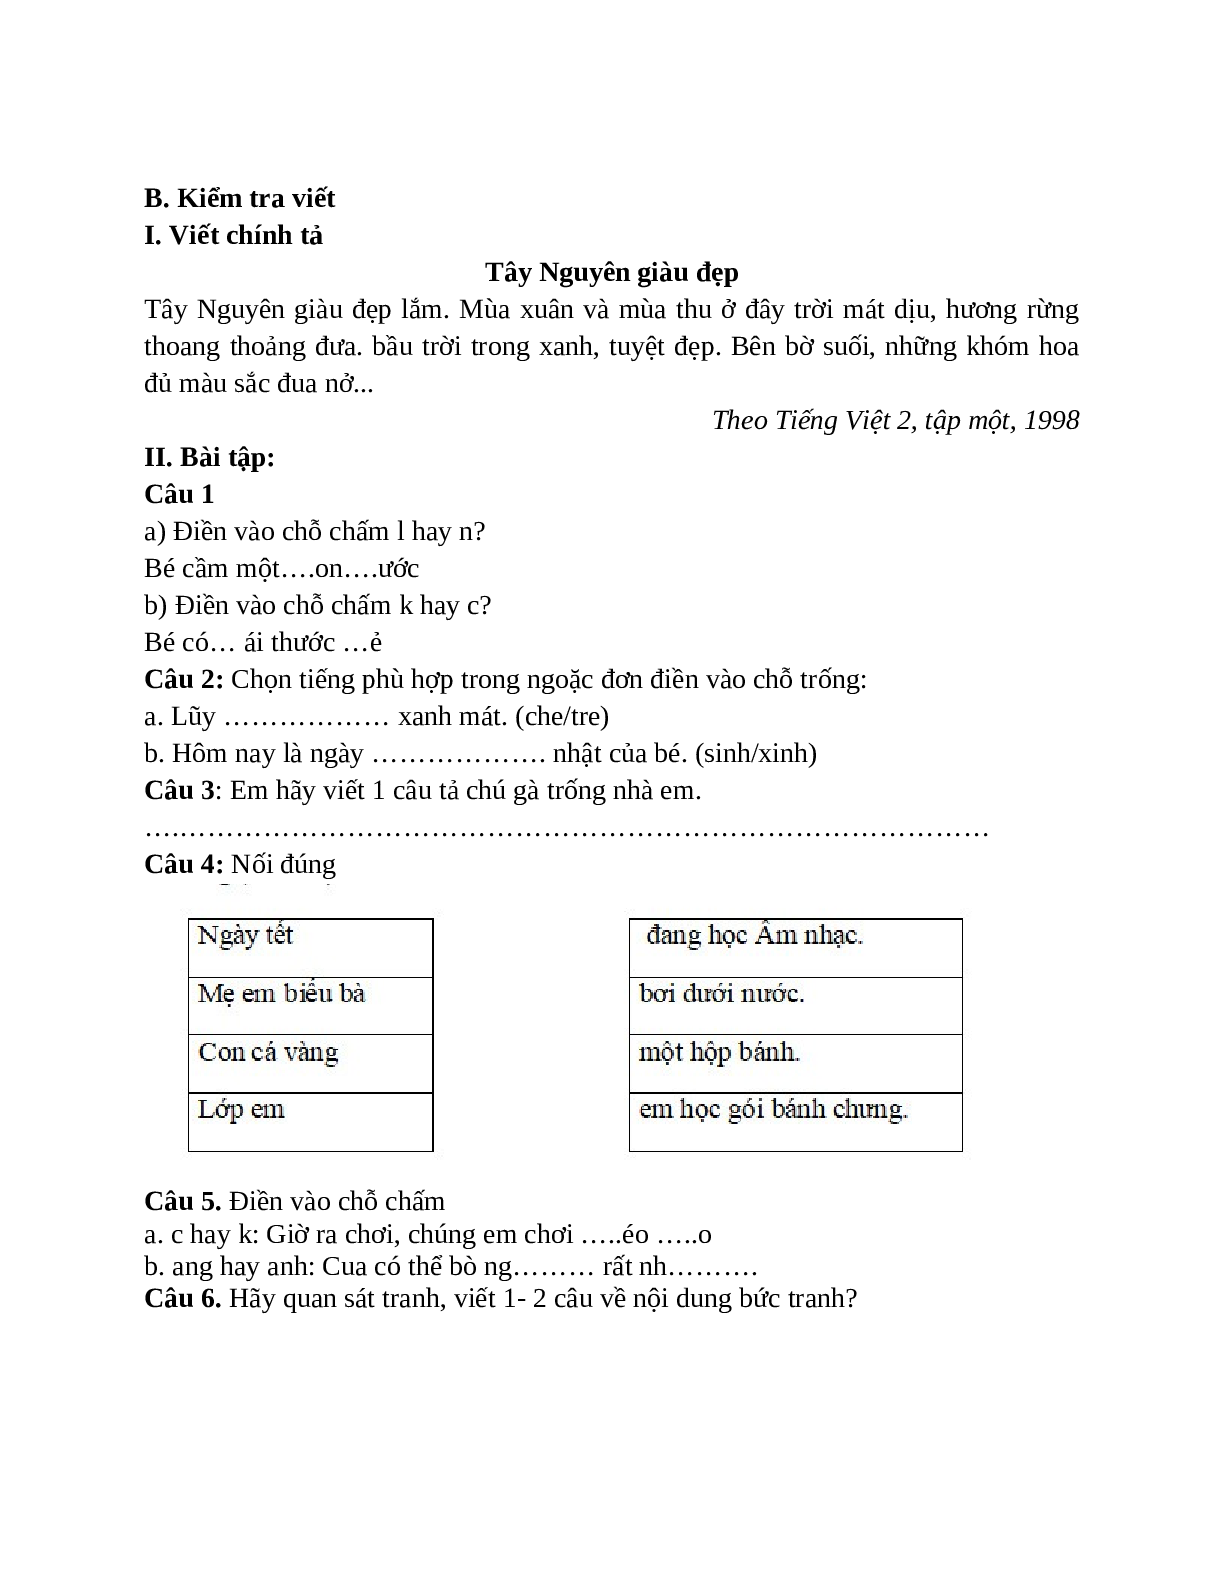 Đề kiểm tra Tiếng Việt cuối kì 2 lớp 1 - đề 2 (trang 2)